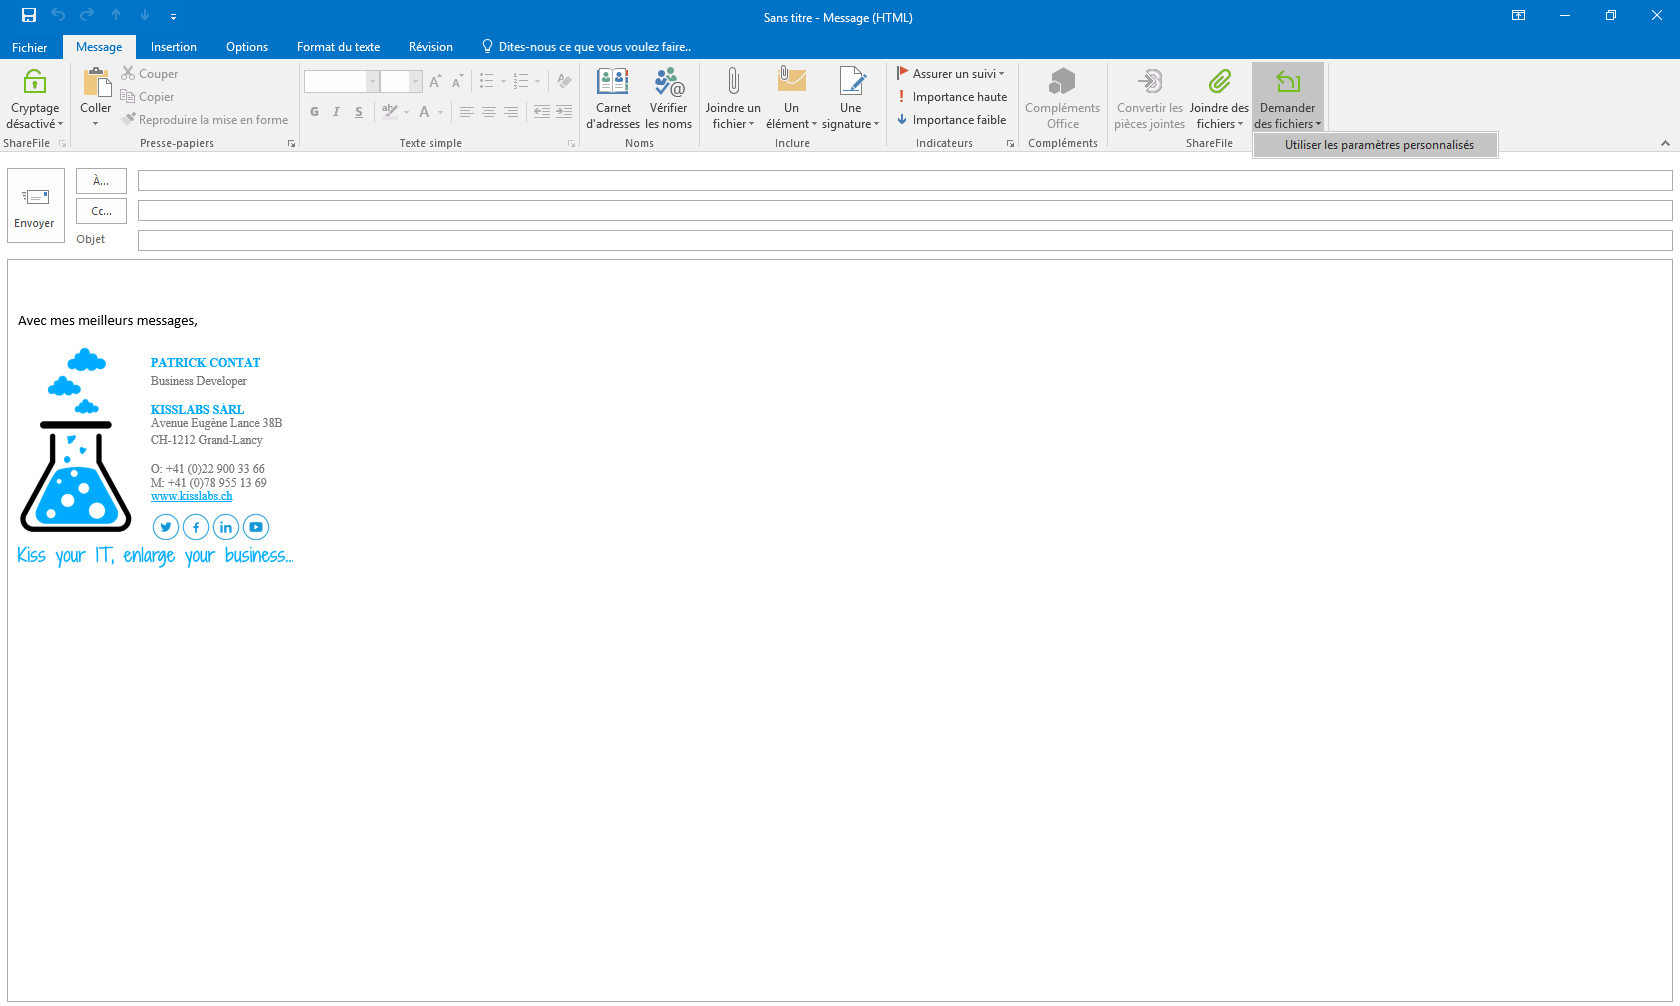 KissFile - Citrix ShareFile - Demande de fichier via Outlook